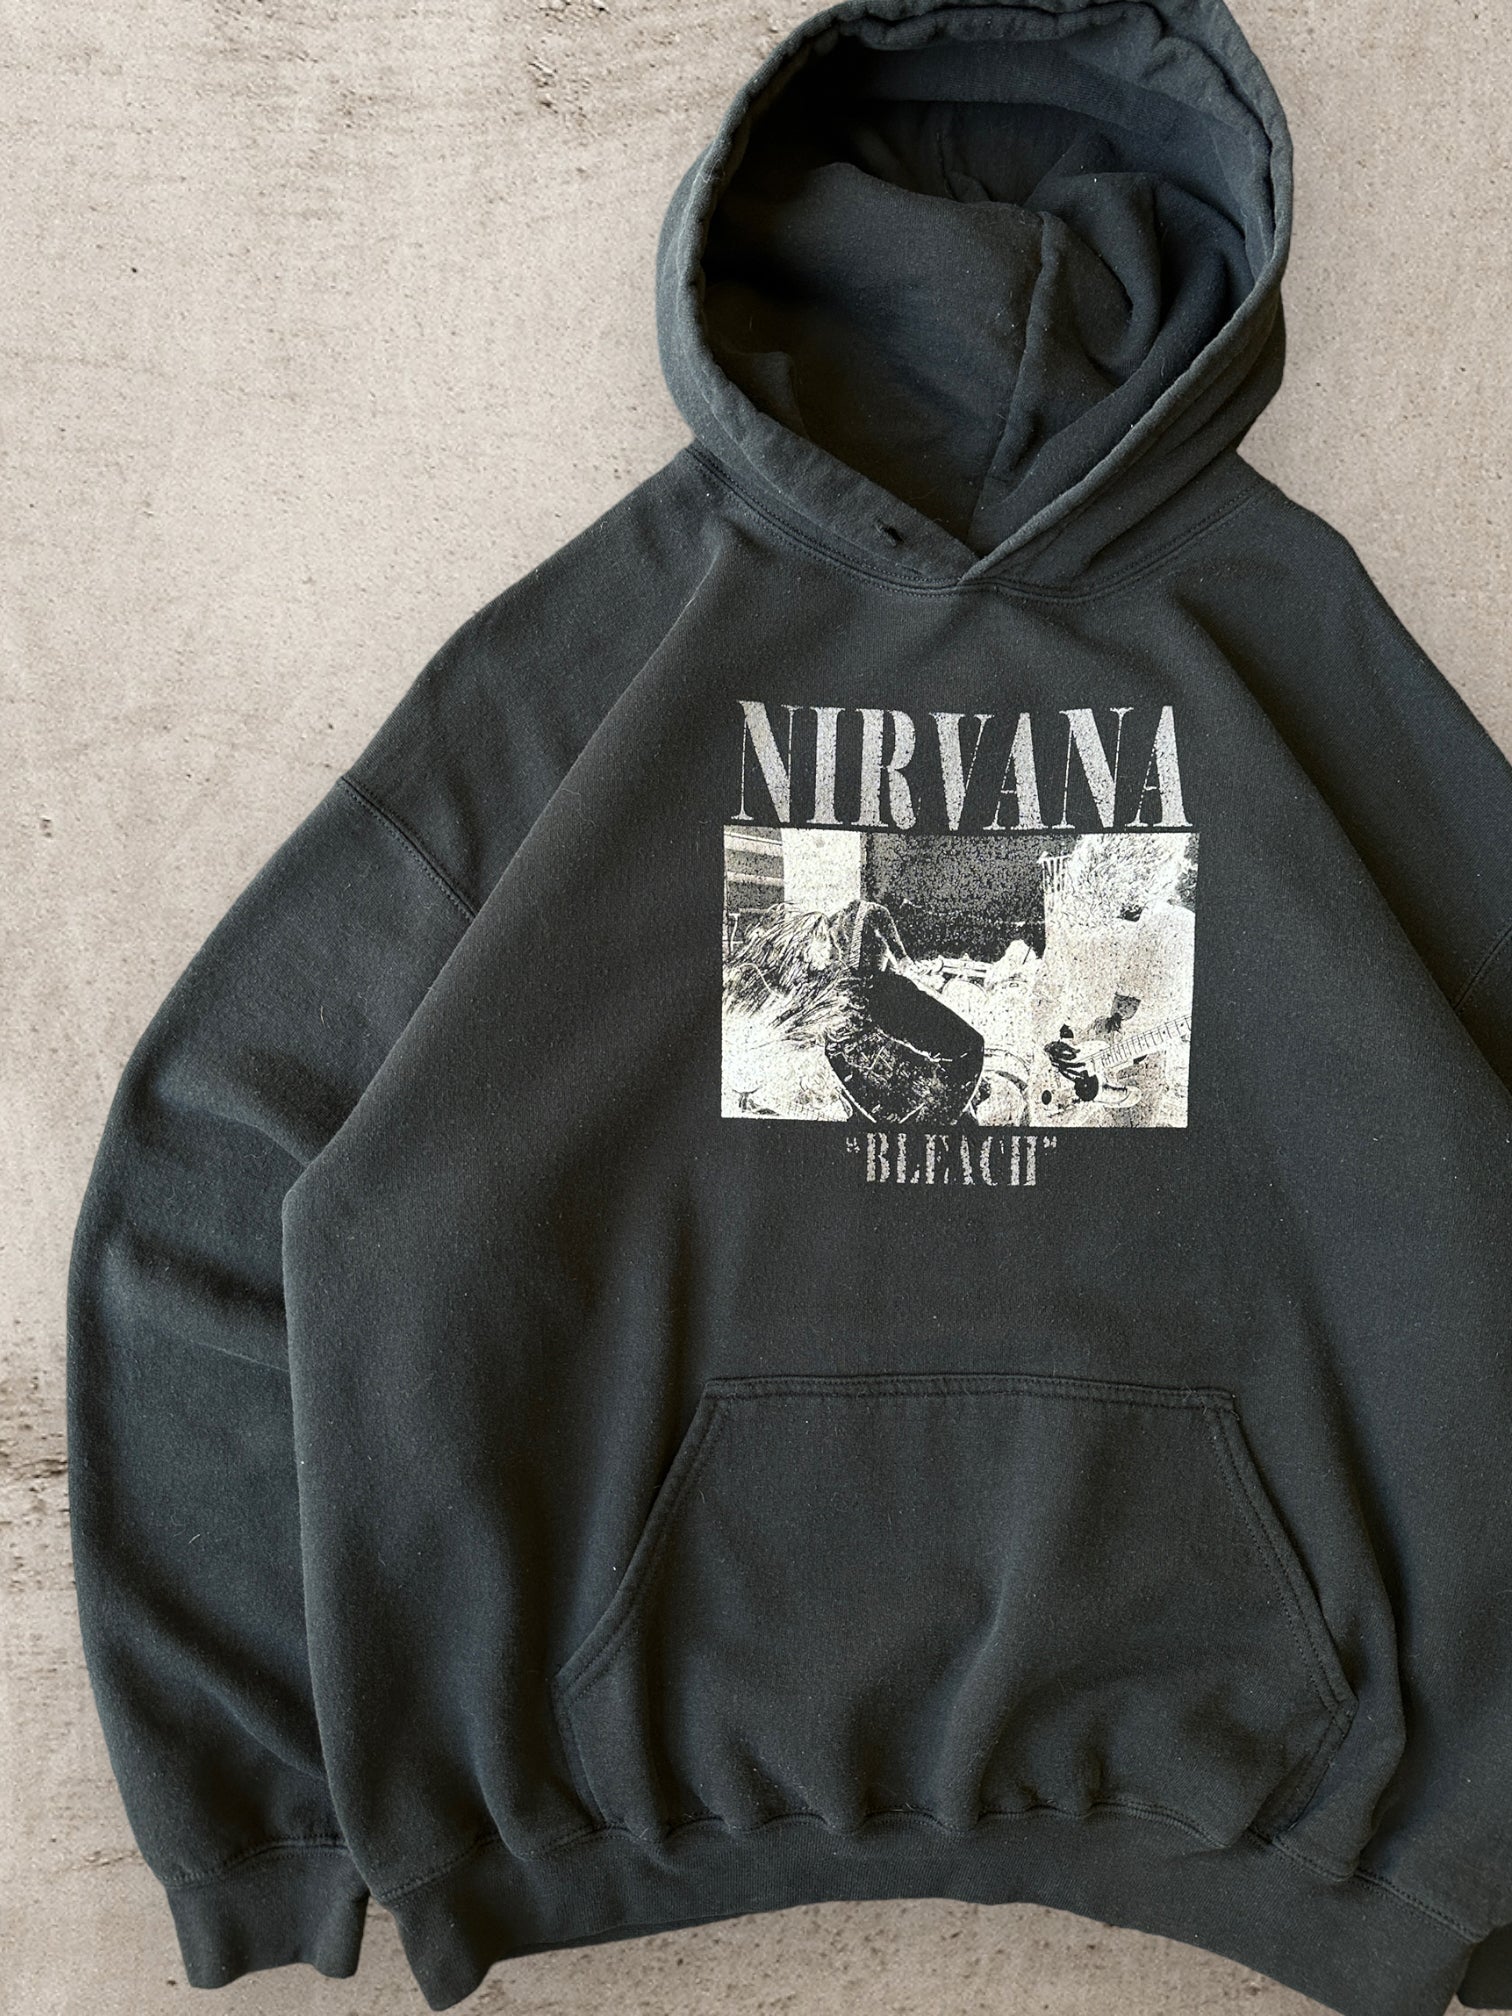 00s Nirvana Bleach Hoodie - Large